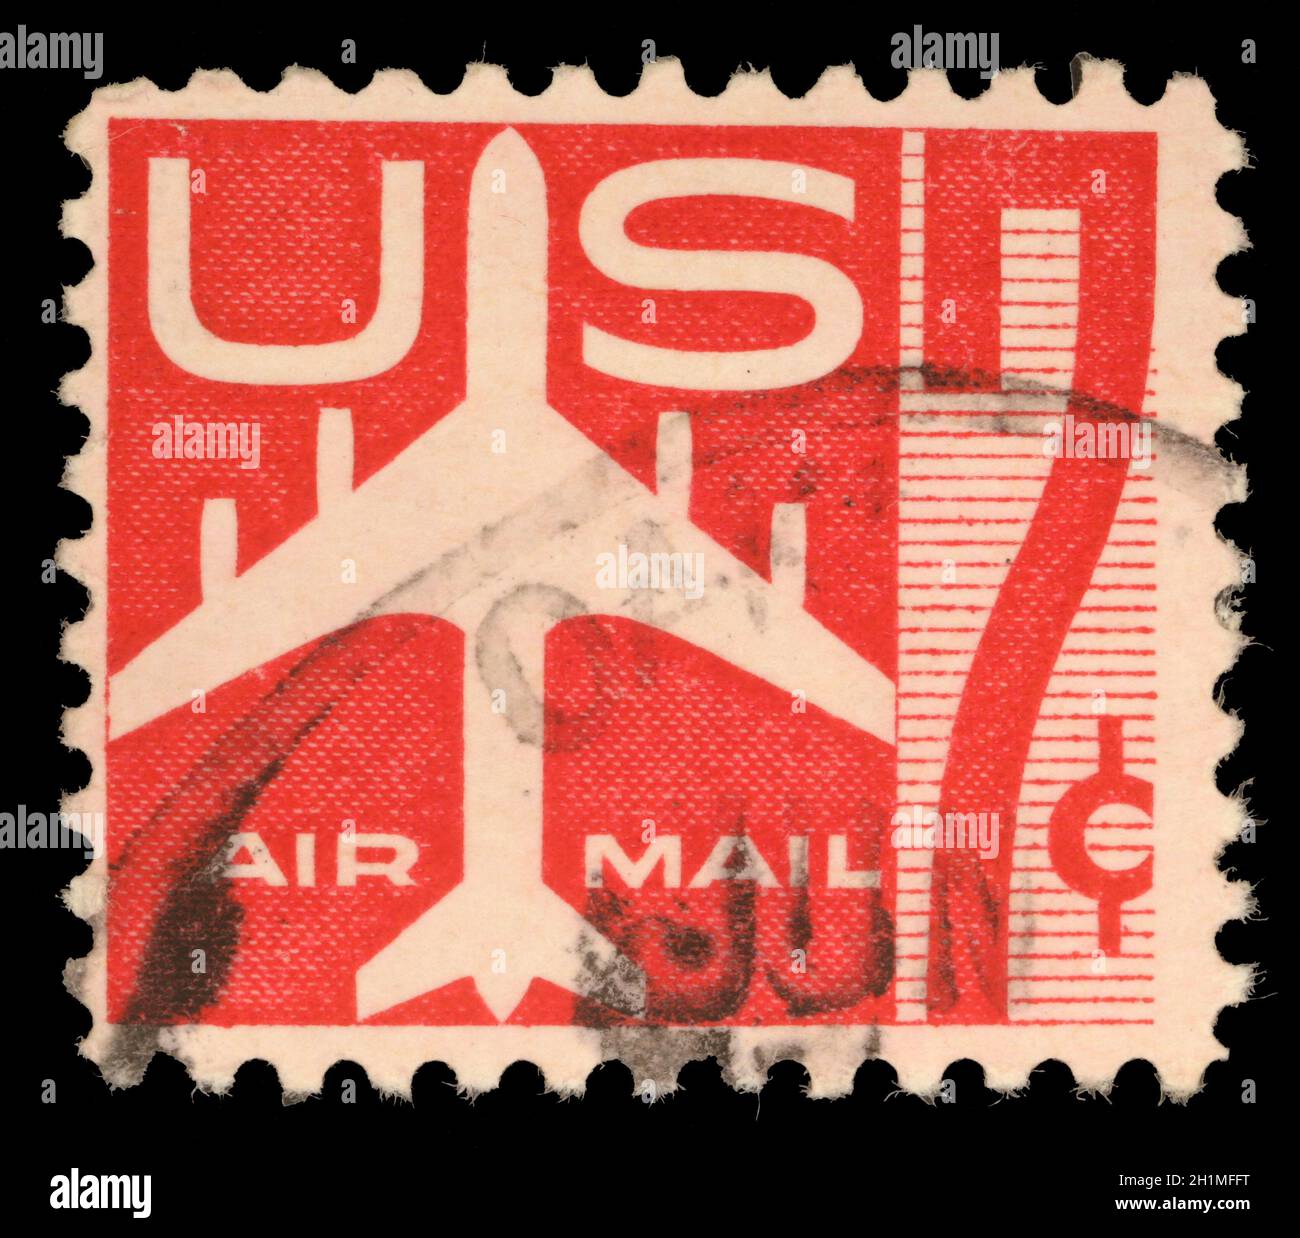 Francobollo degli Stati Uniti del valore di 7c utilizzato per le spedizioni di posta aerea oltremare che mostrano simboli di posta aerea e la stampa di posta aerea, circa 1960 Foto Stock